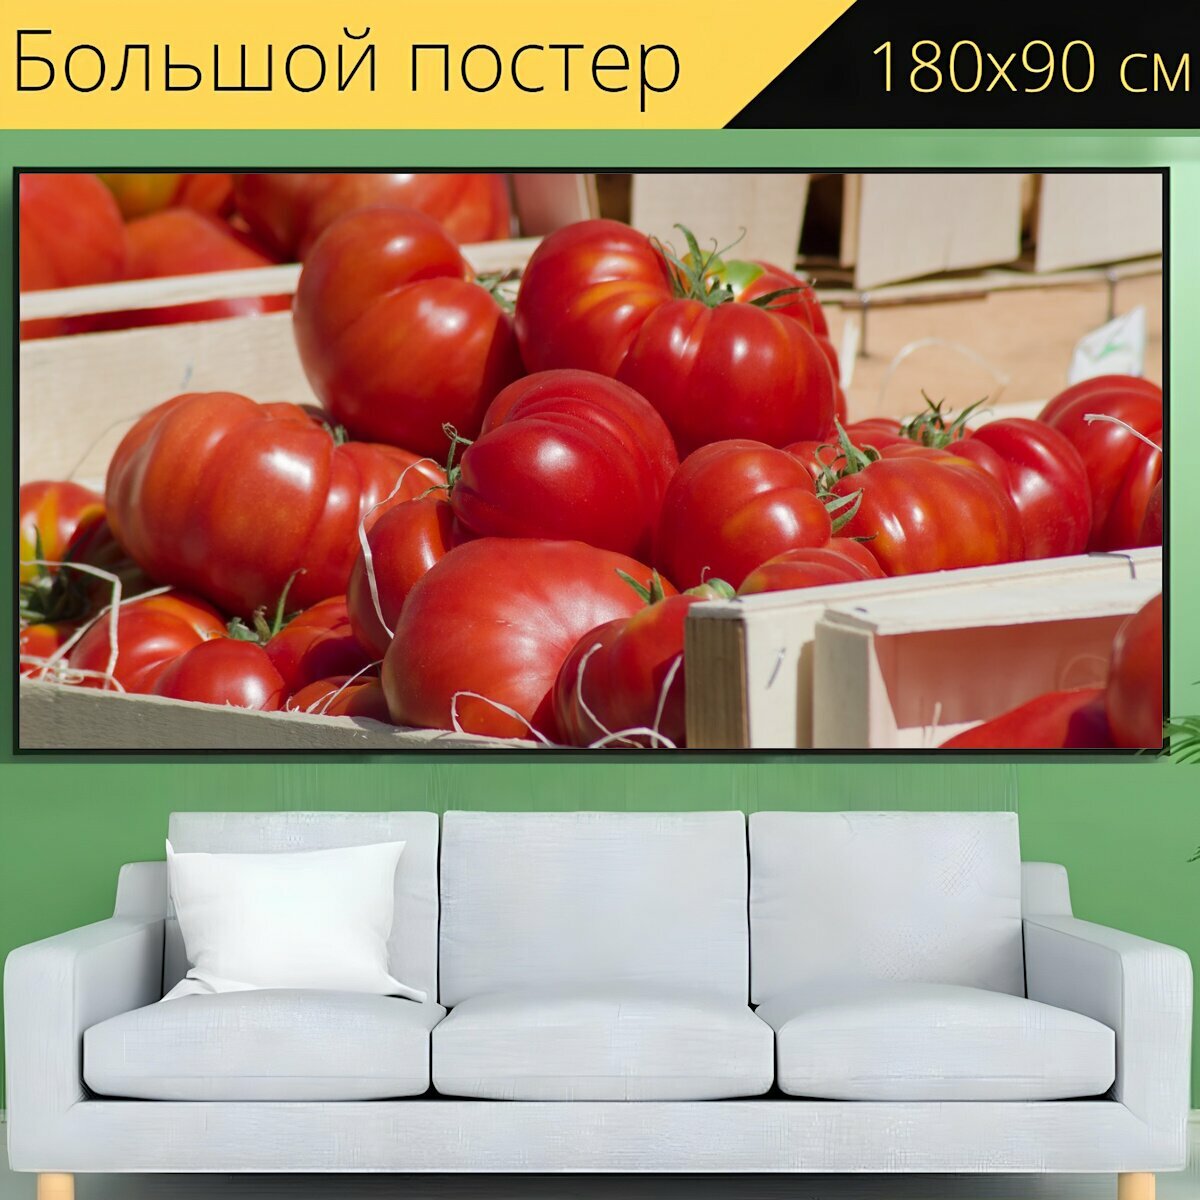 Большой постер "Помидоры, овощи, рынок" 180 x 90 см. для интерьера